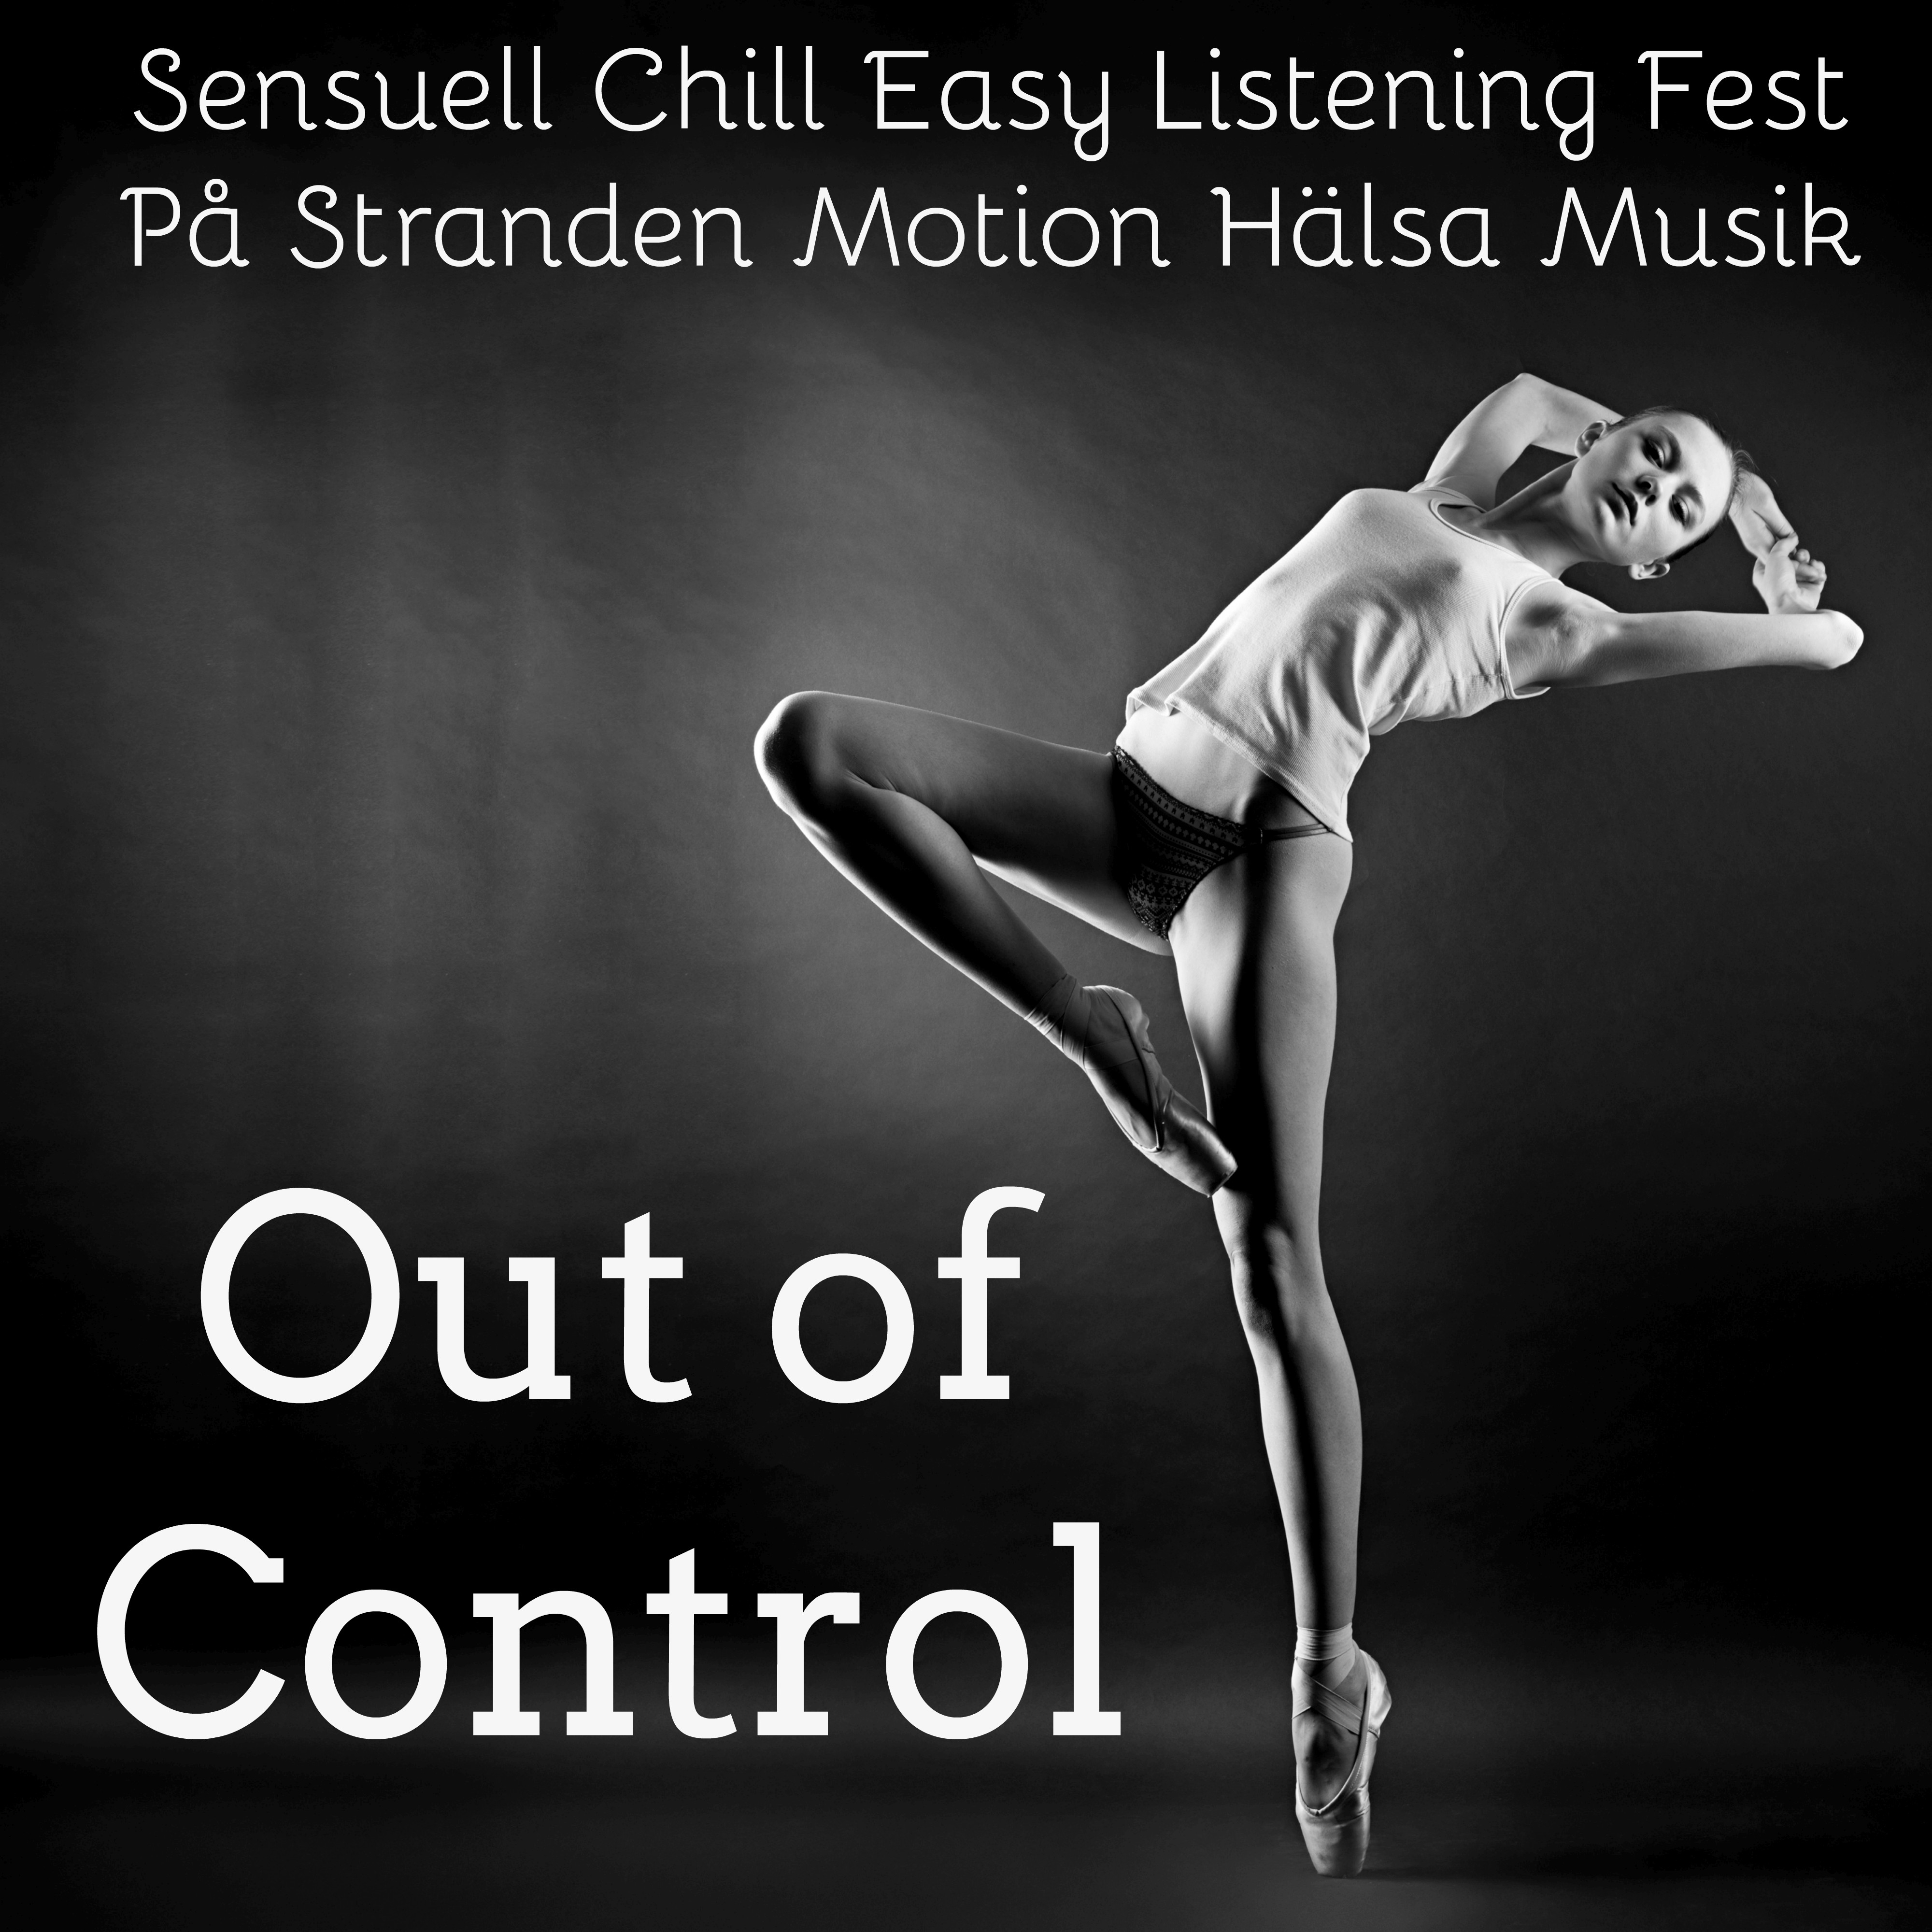 Out of Control  Sensuell Chill Easy Listening Fest P Stranden Motion H lsa Musik f r H lsa och V lbefinnande